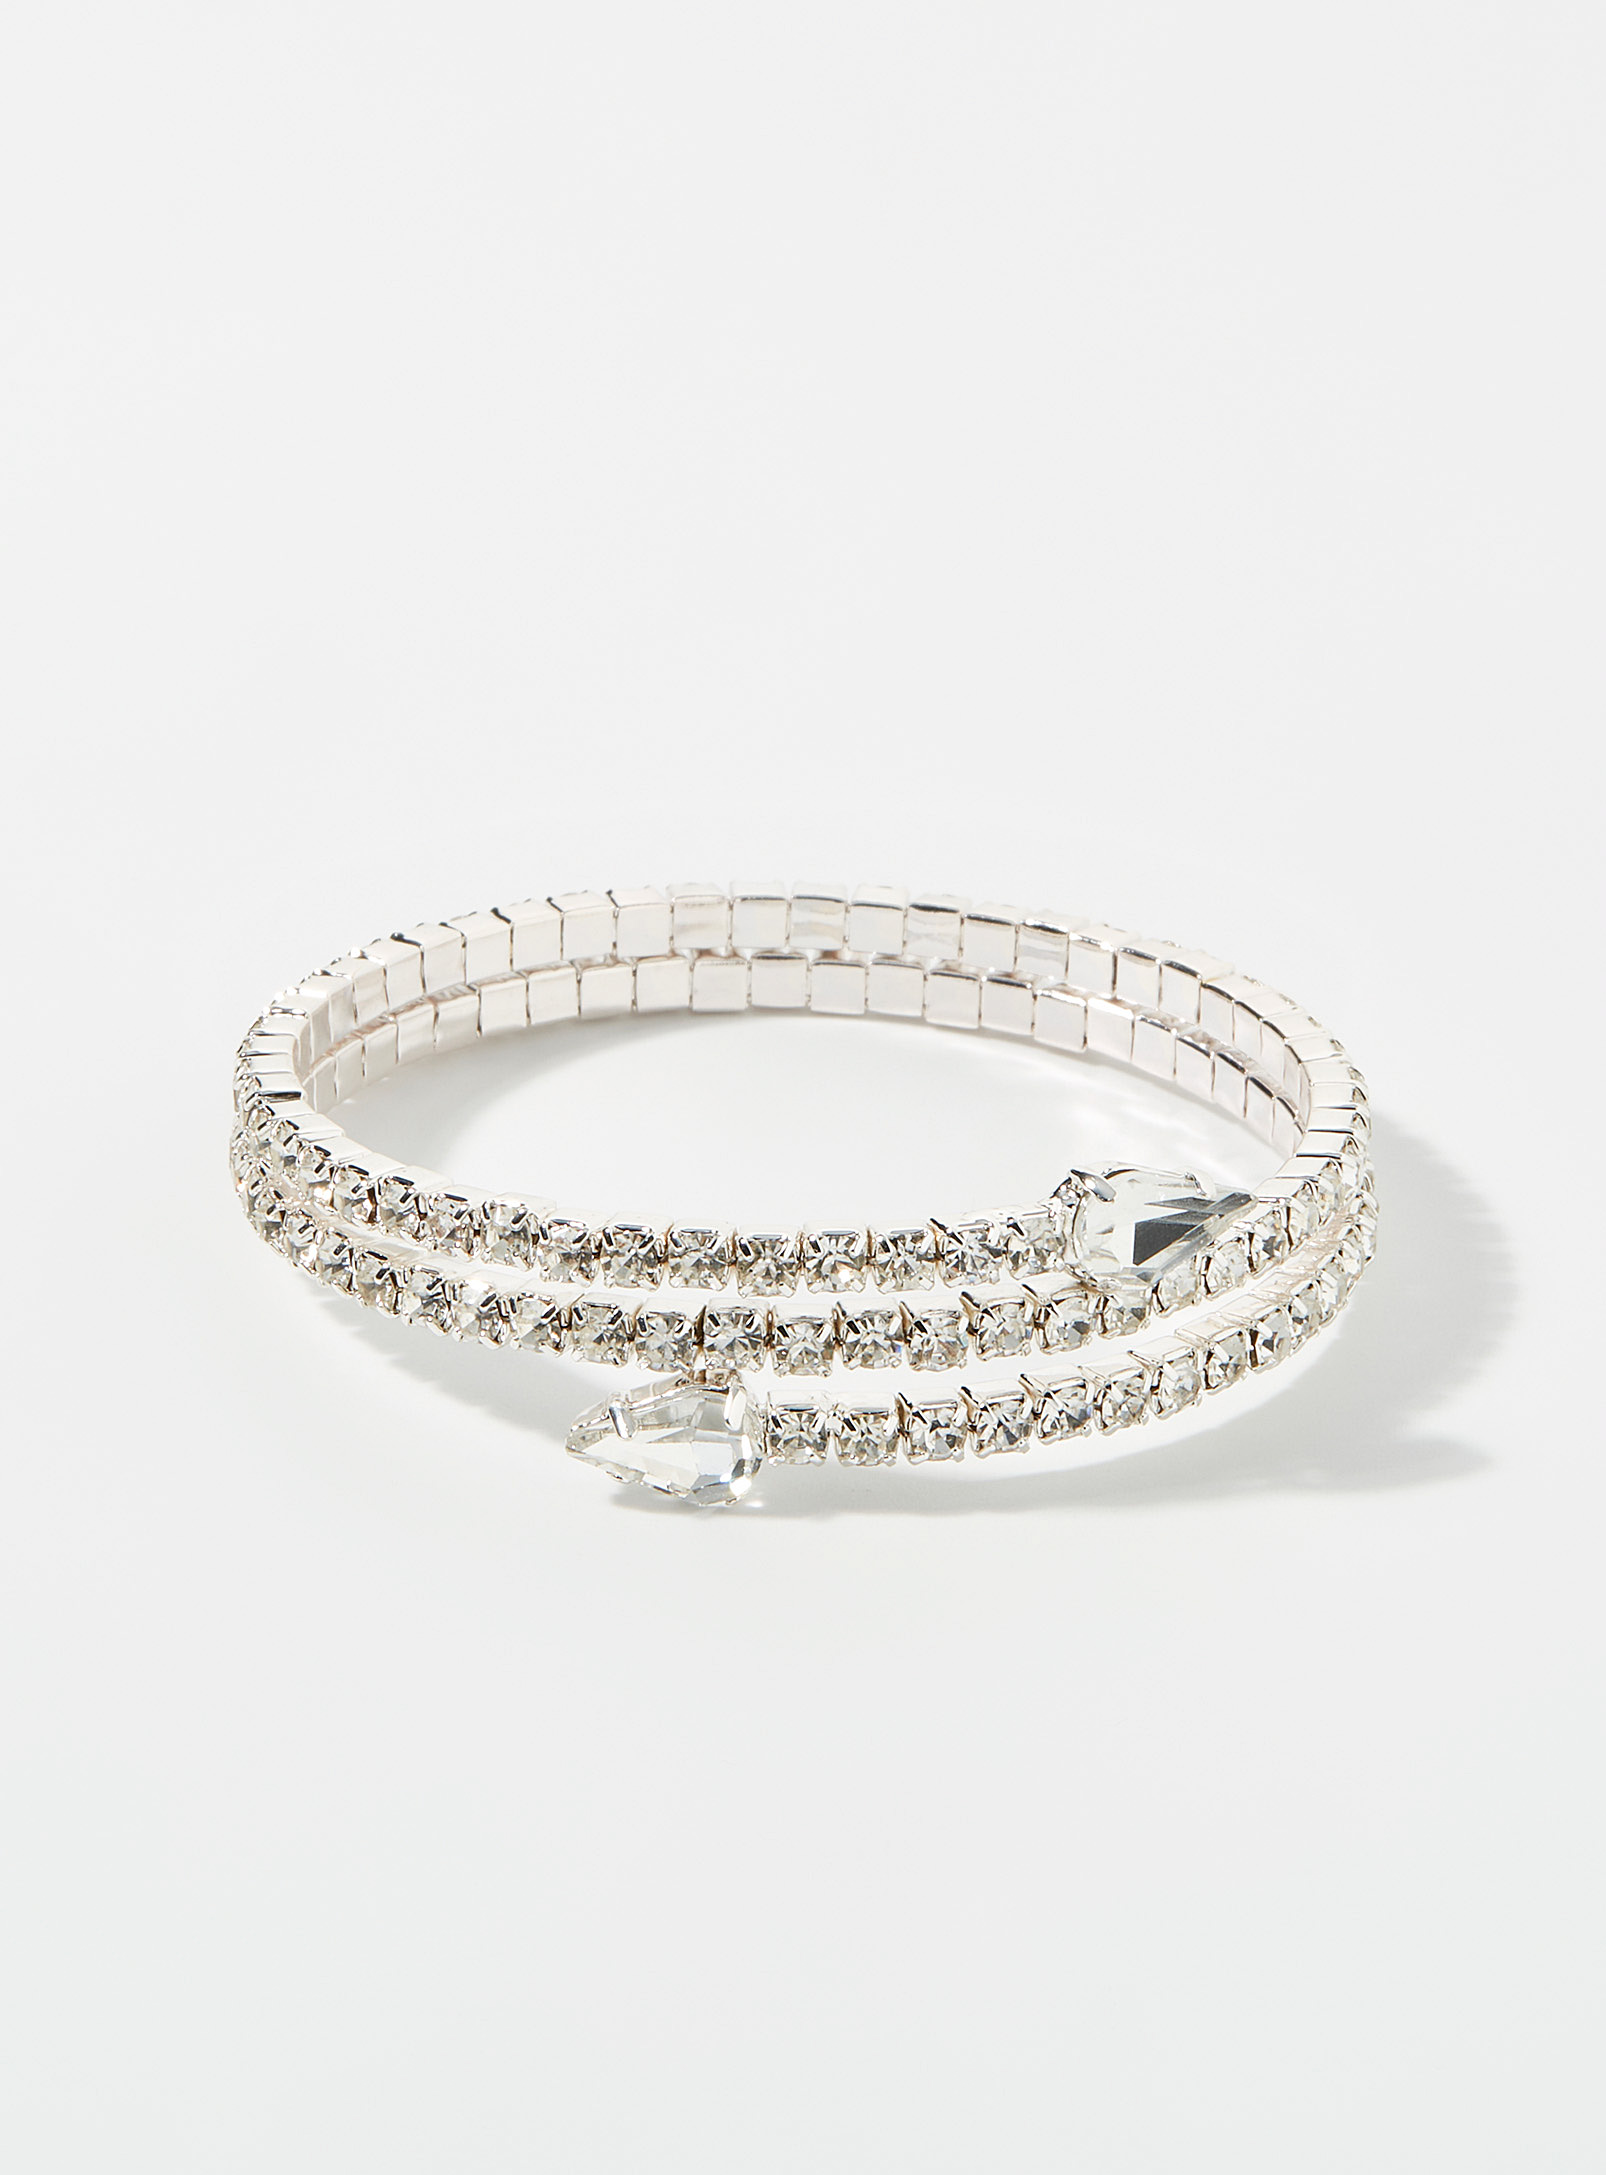 Simons - Women's Small crystal coiled bracelet